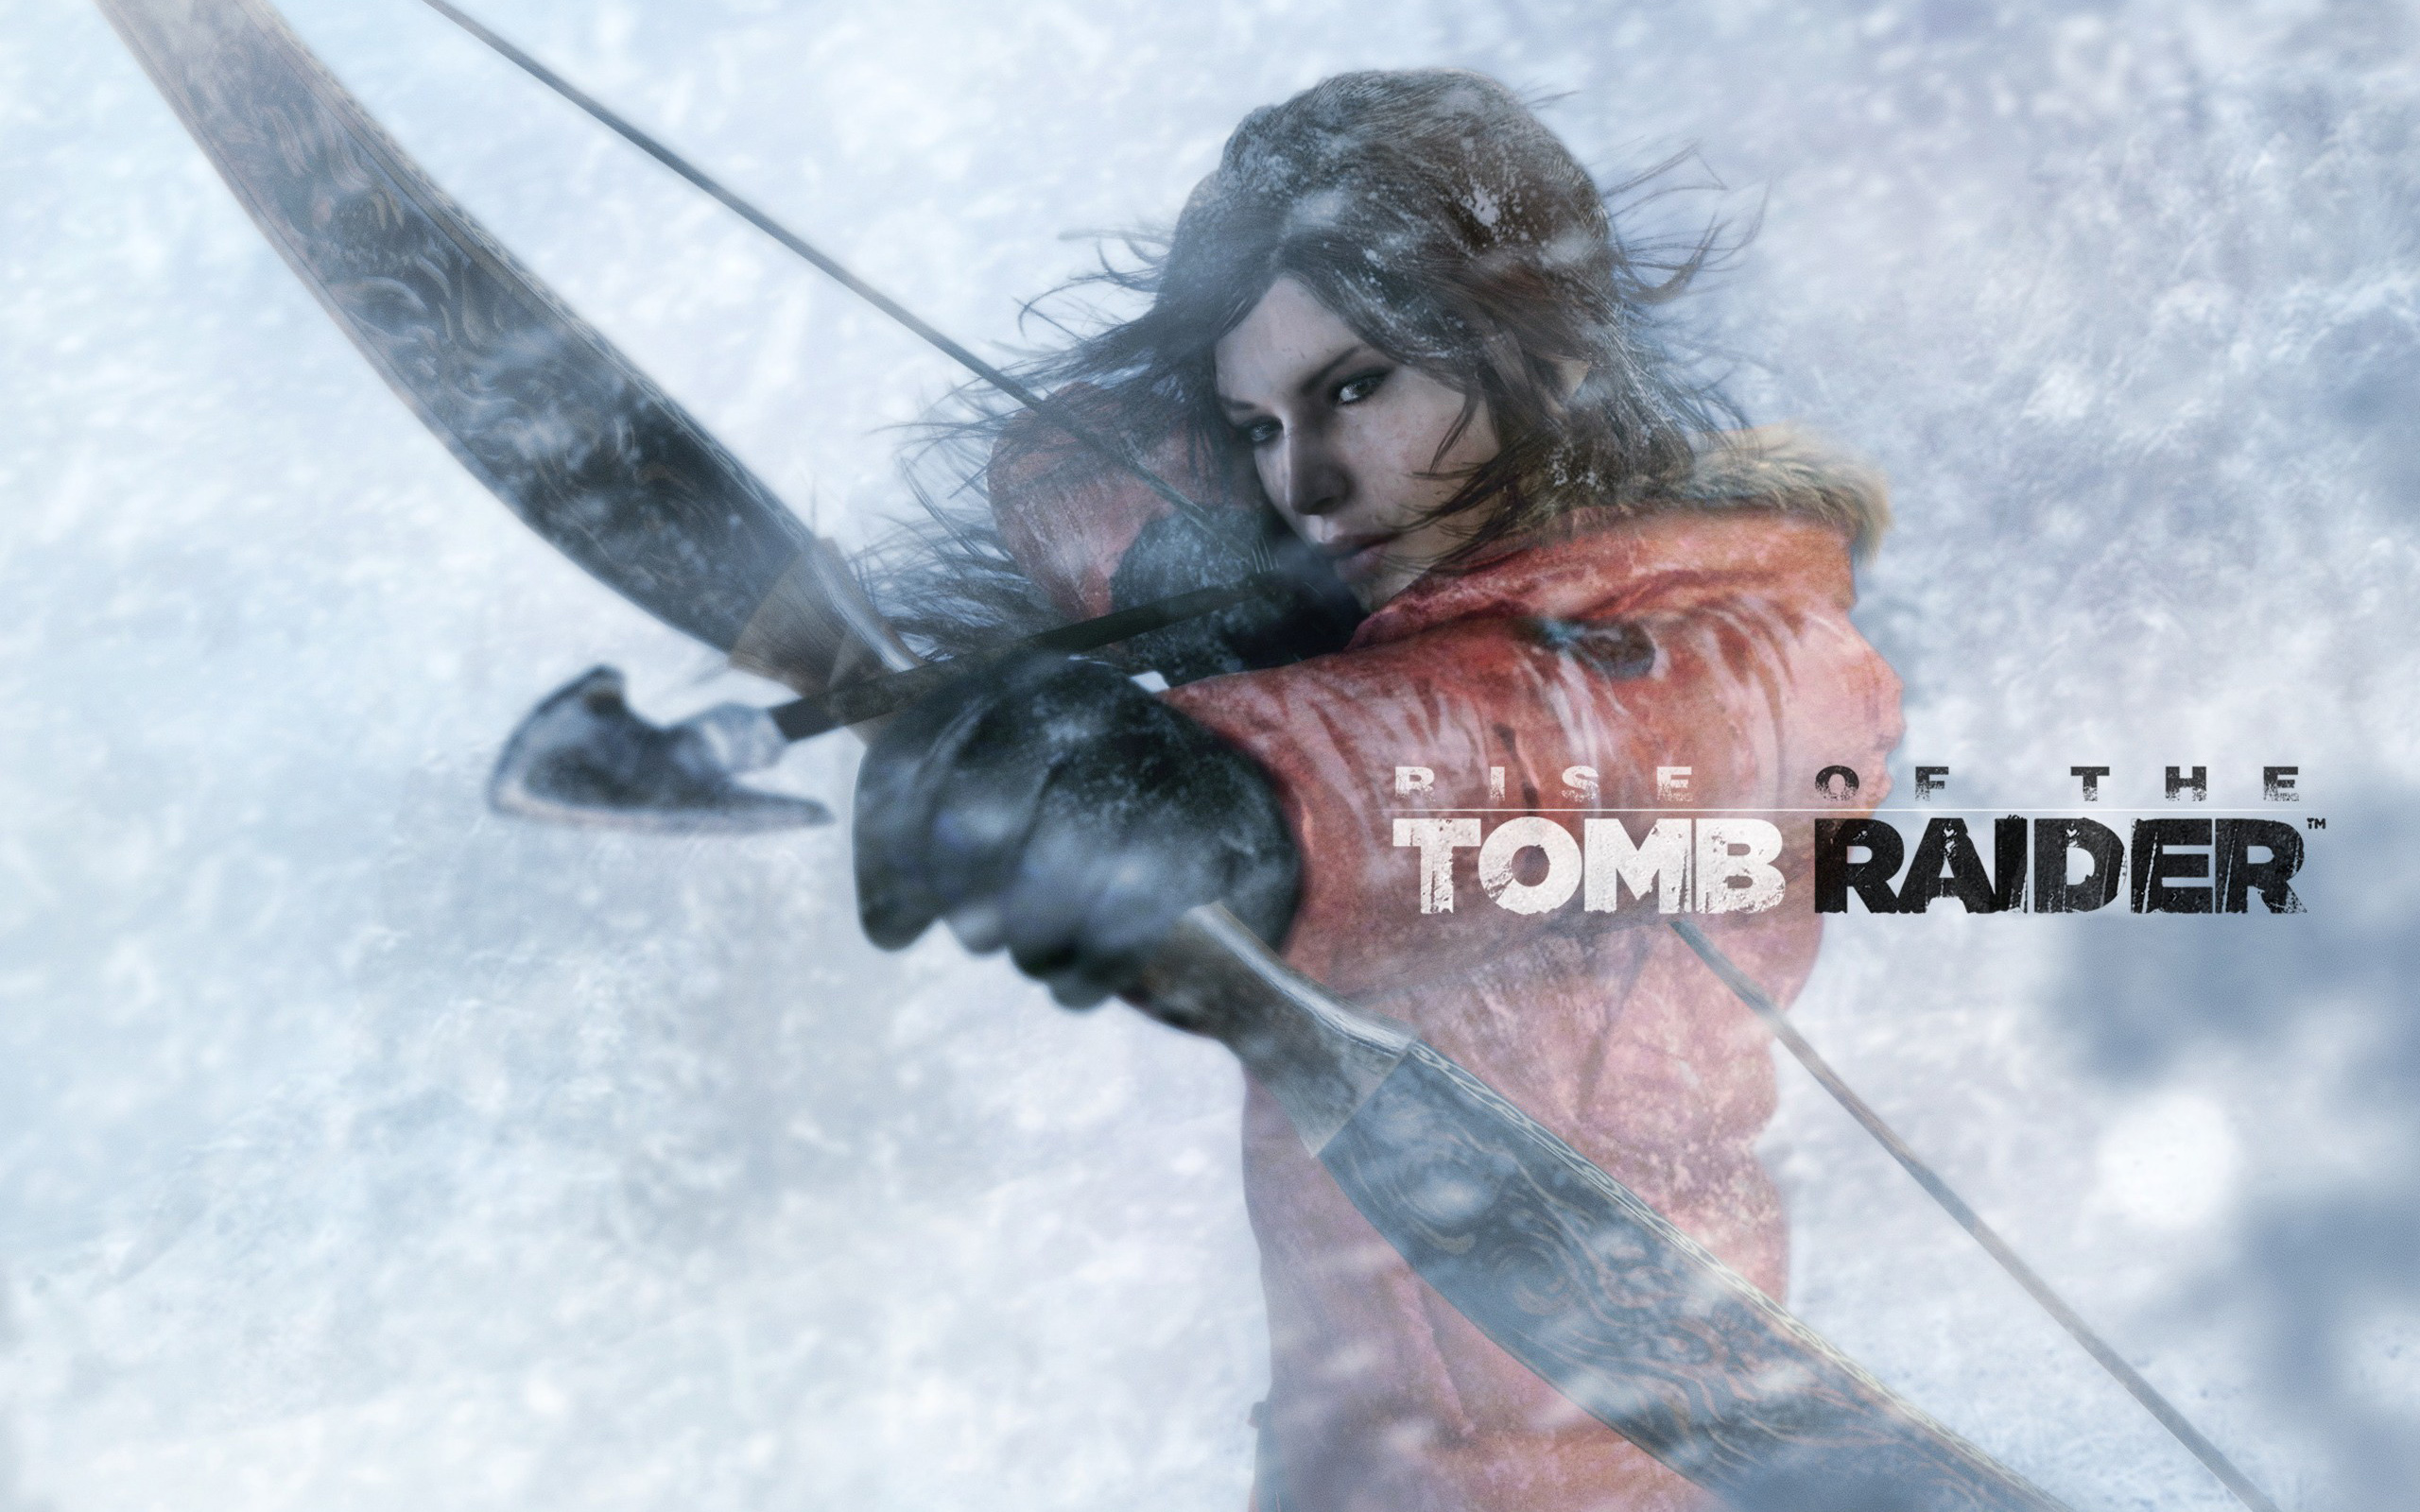 48+] Rise of Tomb Raider Wallpaper - WallpaperSafari